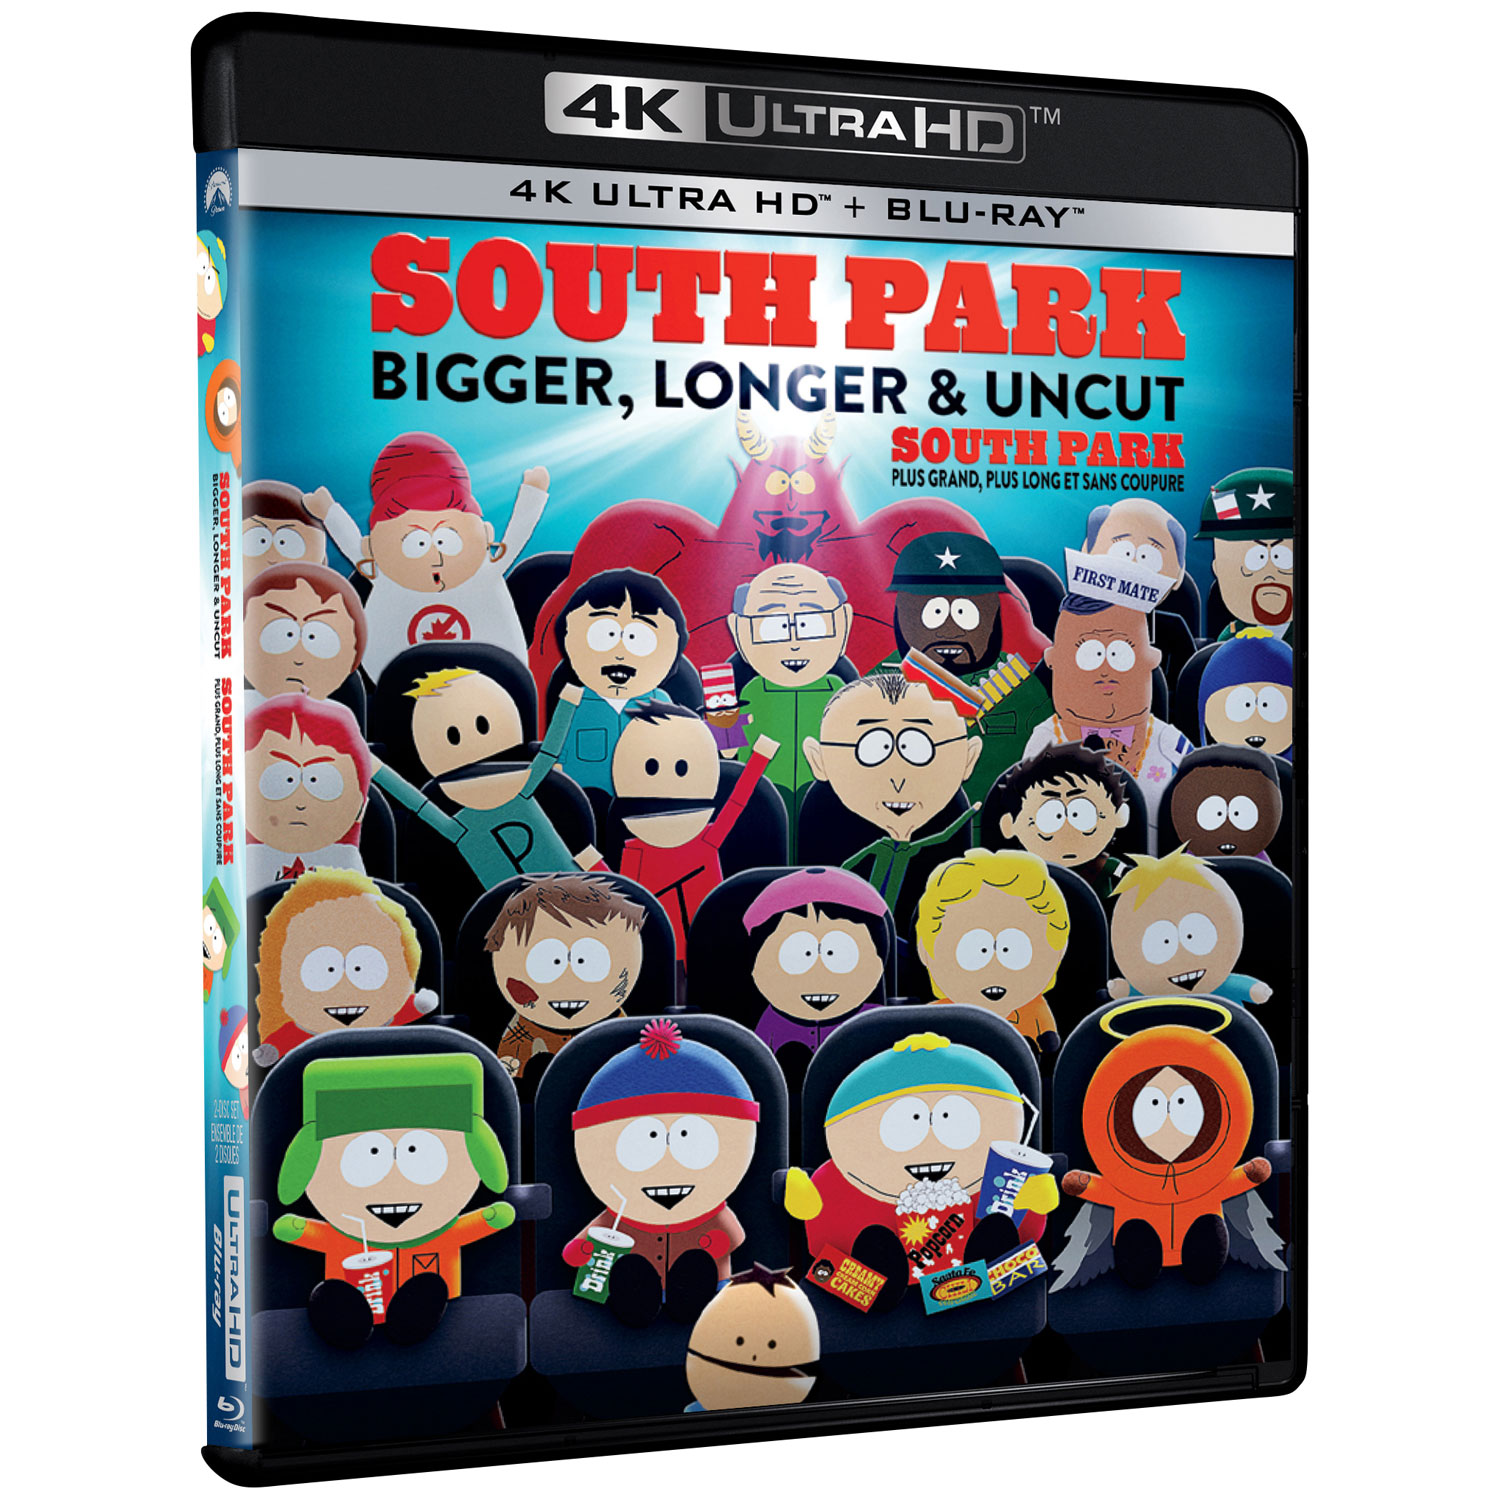 South Park: Bigger, Longer & Uncut (4K Ultra HD) (Blu-ray Combo)